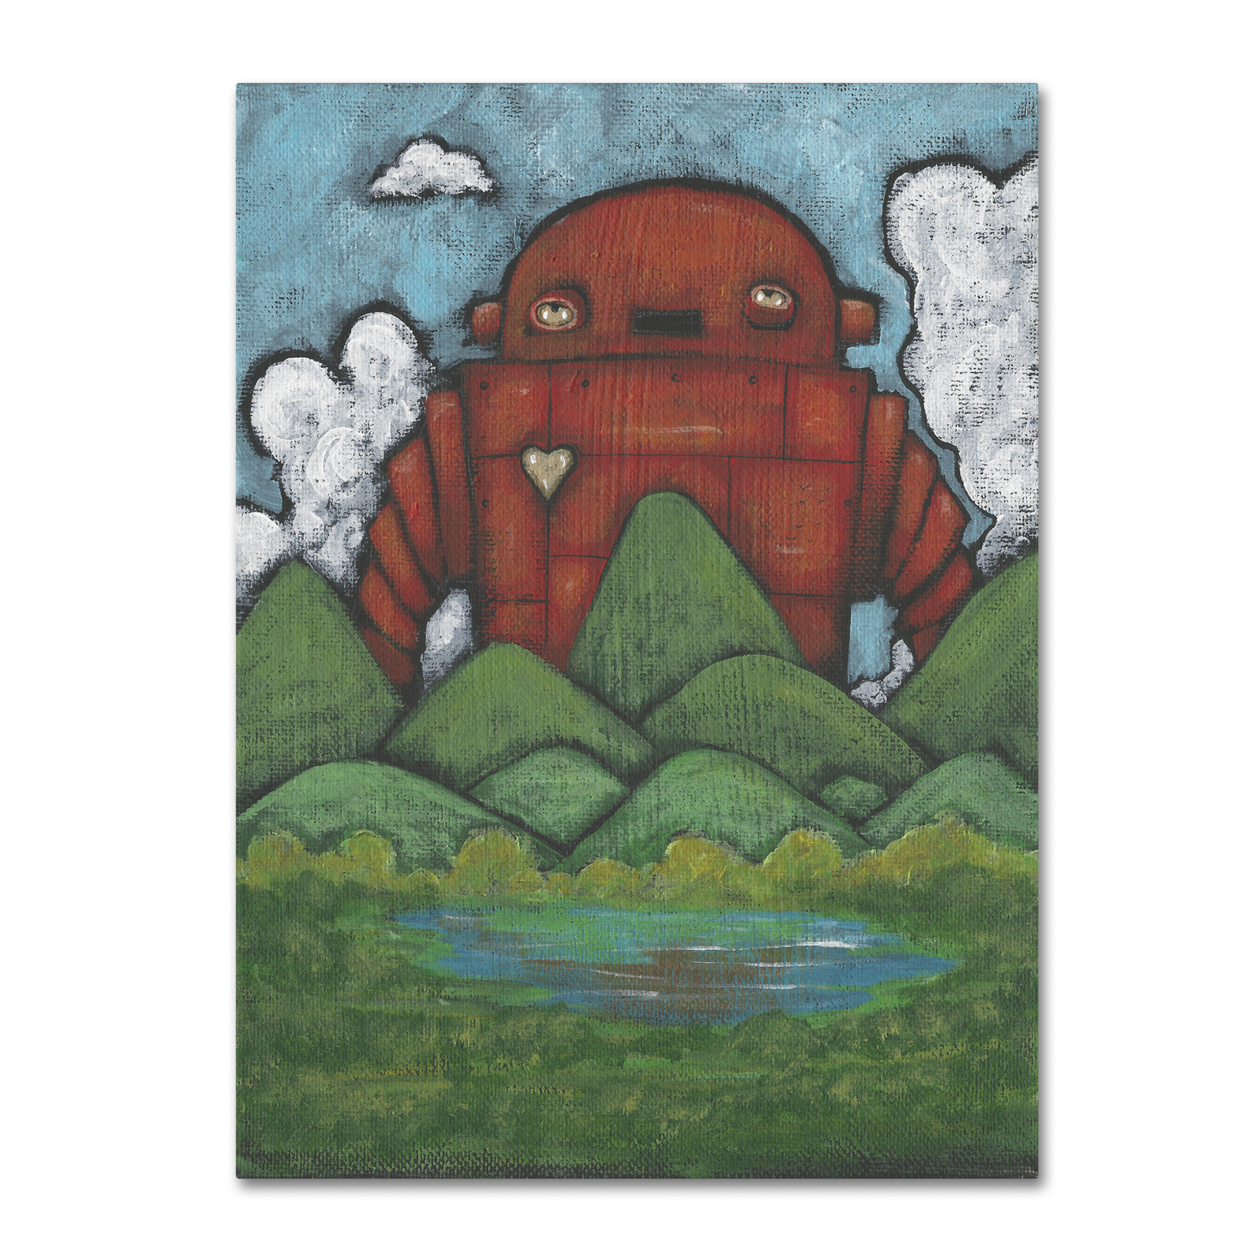 Craig Snodgrass 'Valley-Invader' Canvas Art 18 X 24